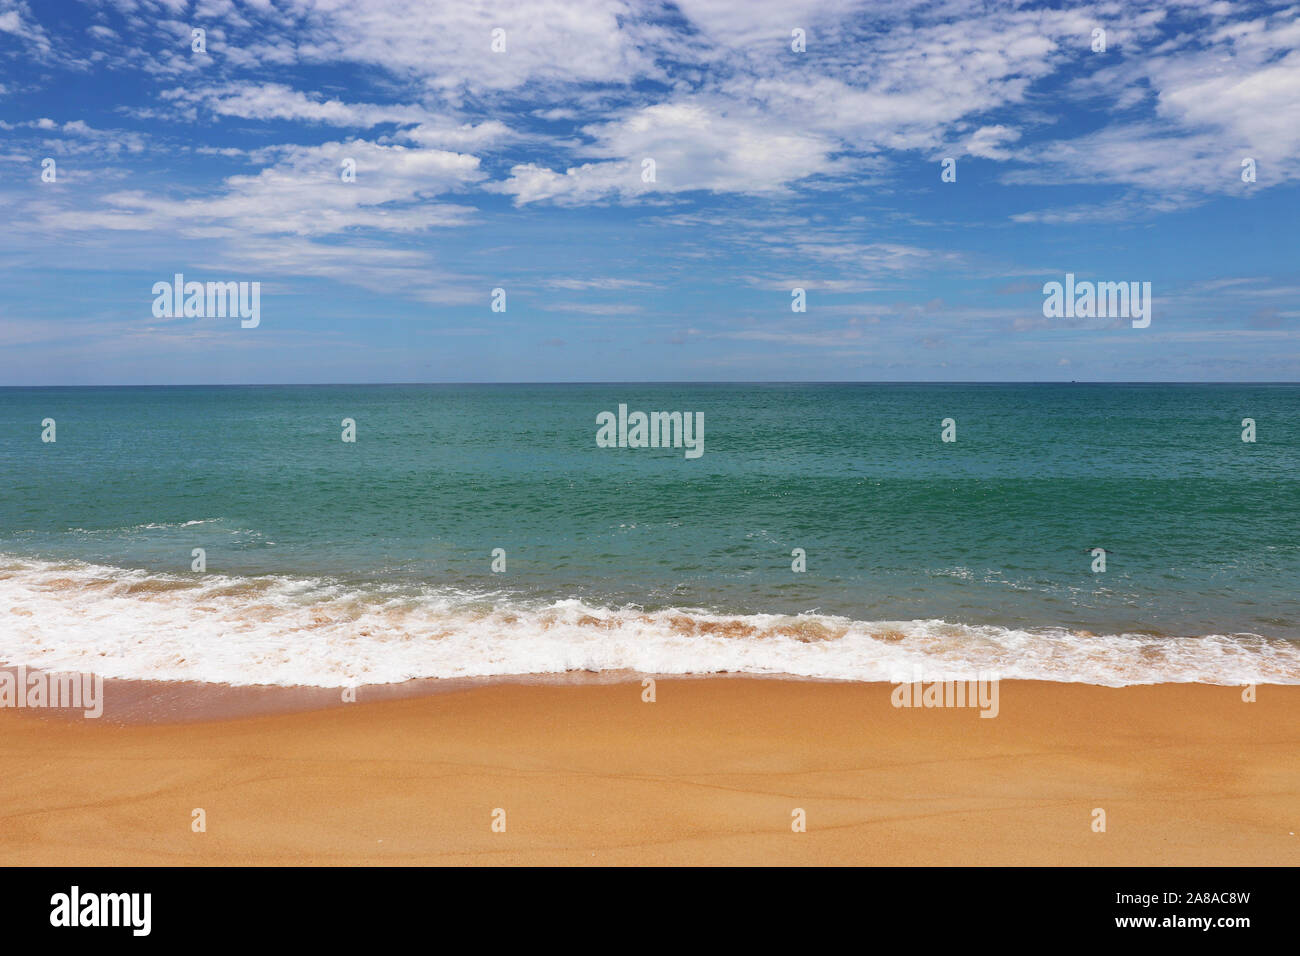 La plage de sable tropicale, vue panoramique de la côte de la mer jaune vide avec du sable et de l'onde émeraude avec mousse blanche. Seascape pittoresque avec ciel bleu Banque D'Images